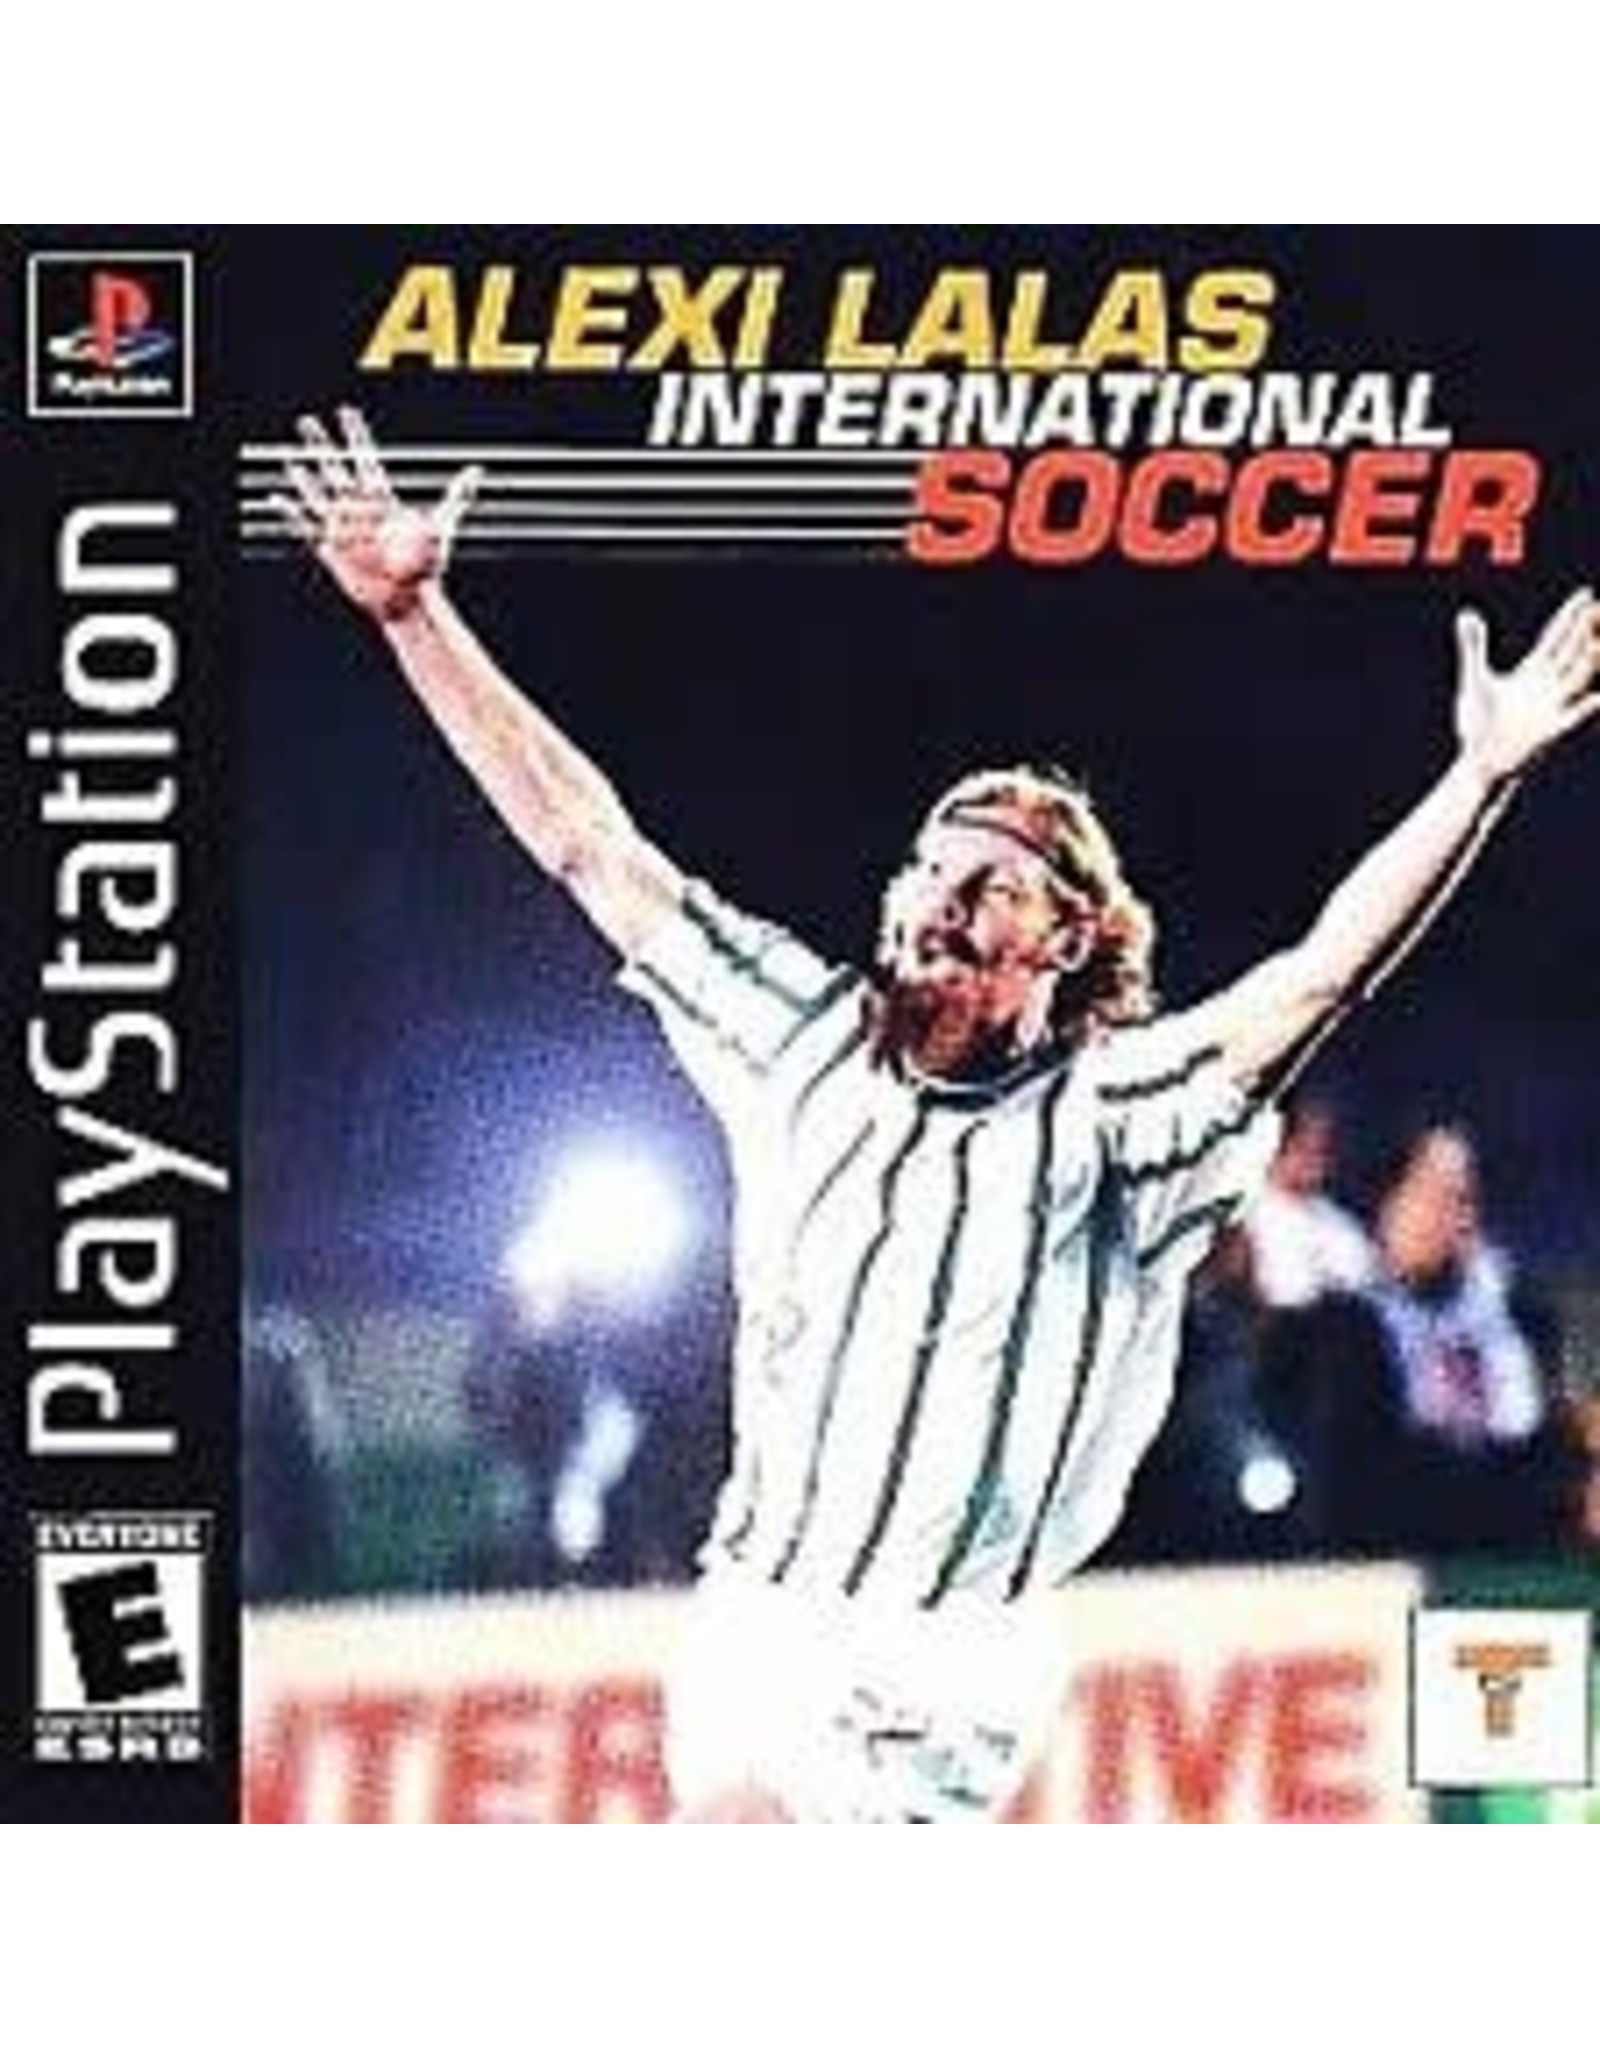 Playstation Alexi Lalas International Soccer (CiB)